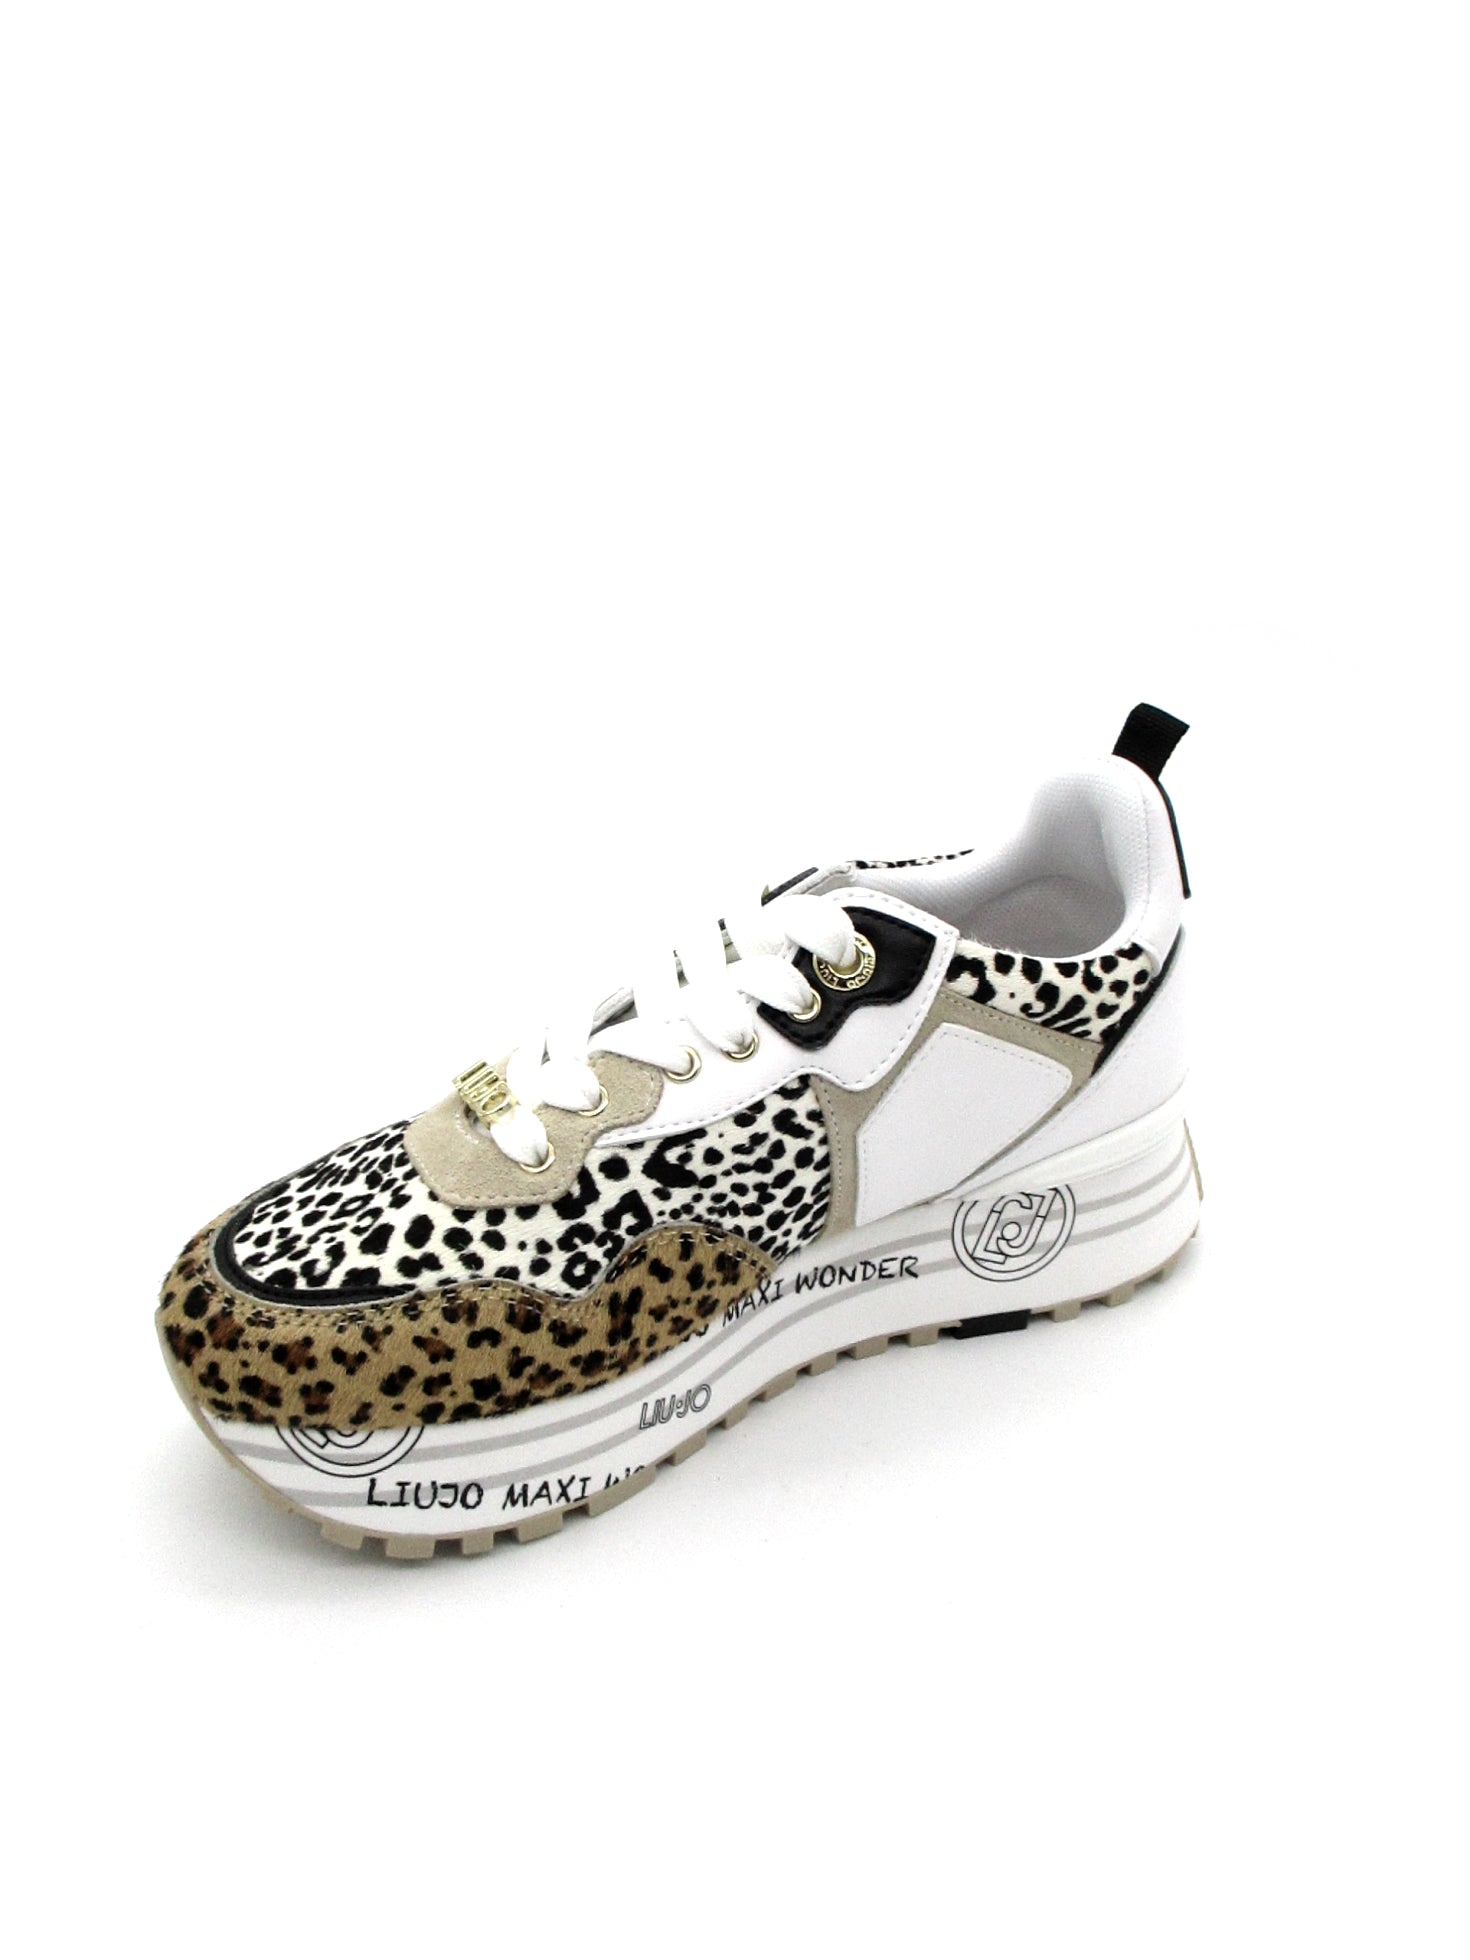 Sneakers LIUJO Pony Leopard - Maxi wonder 01 -